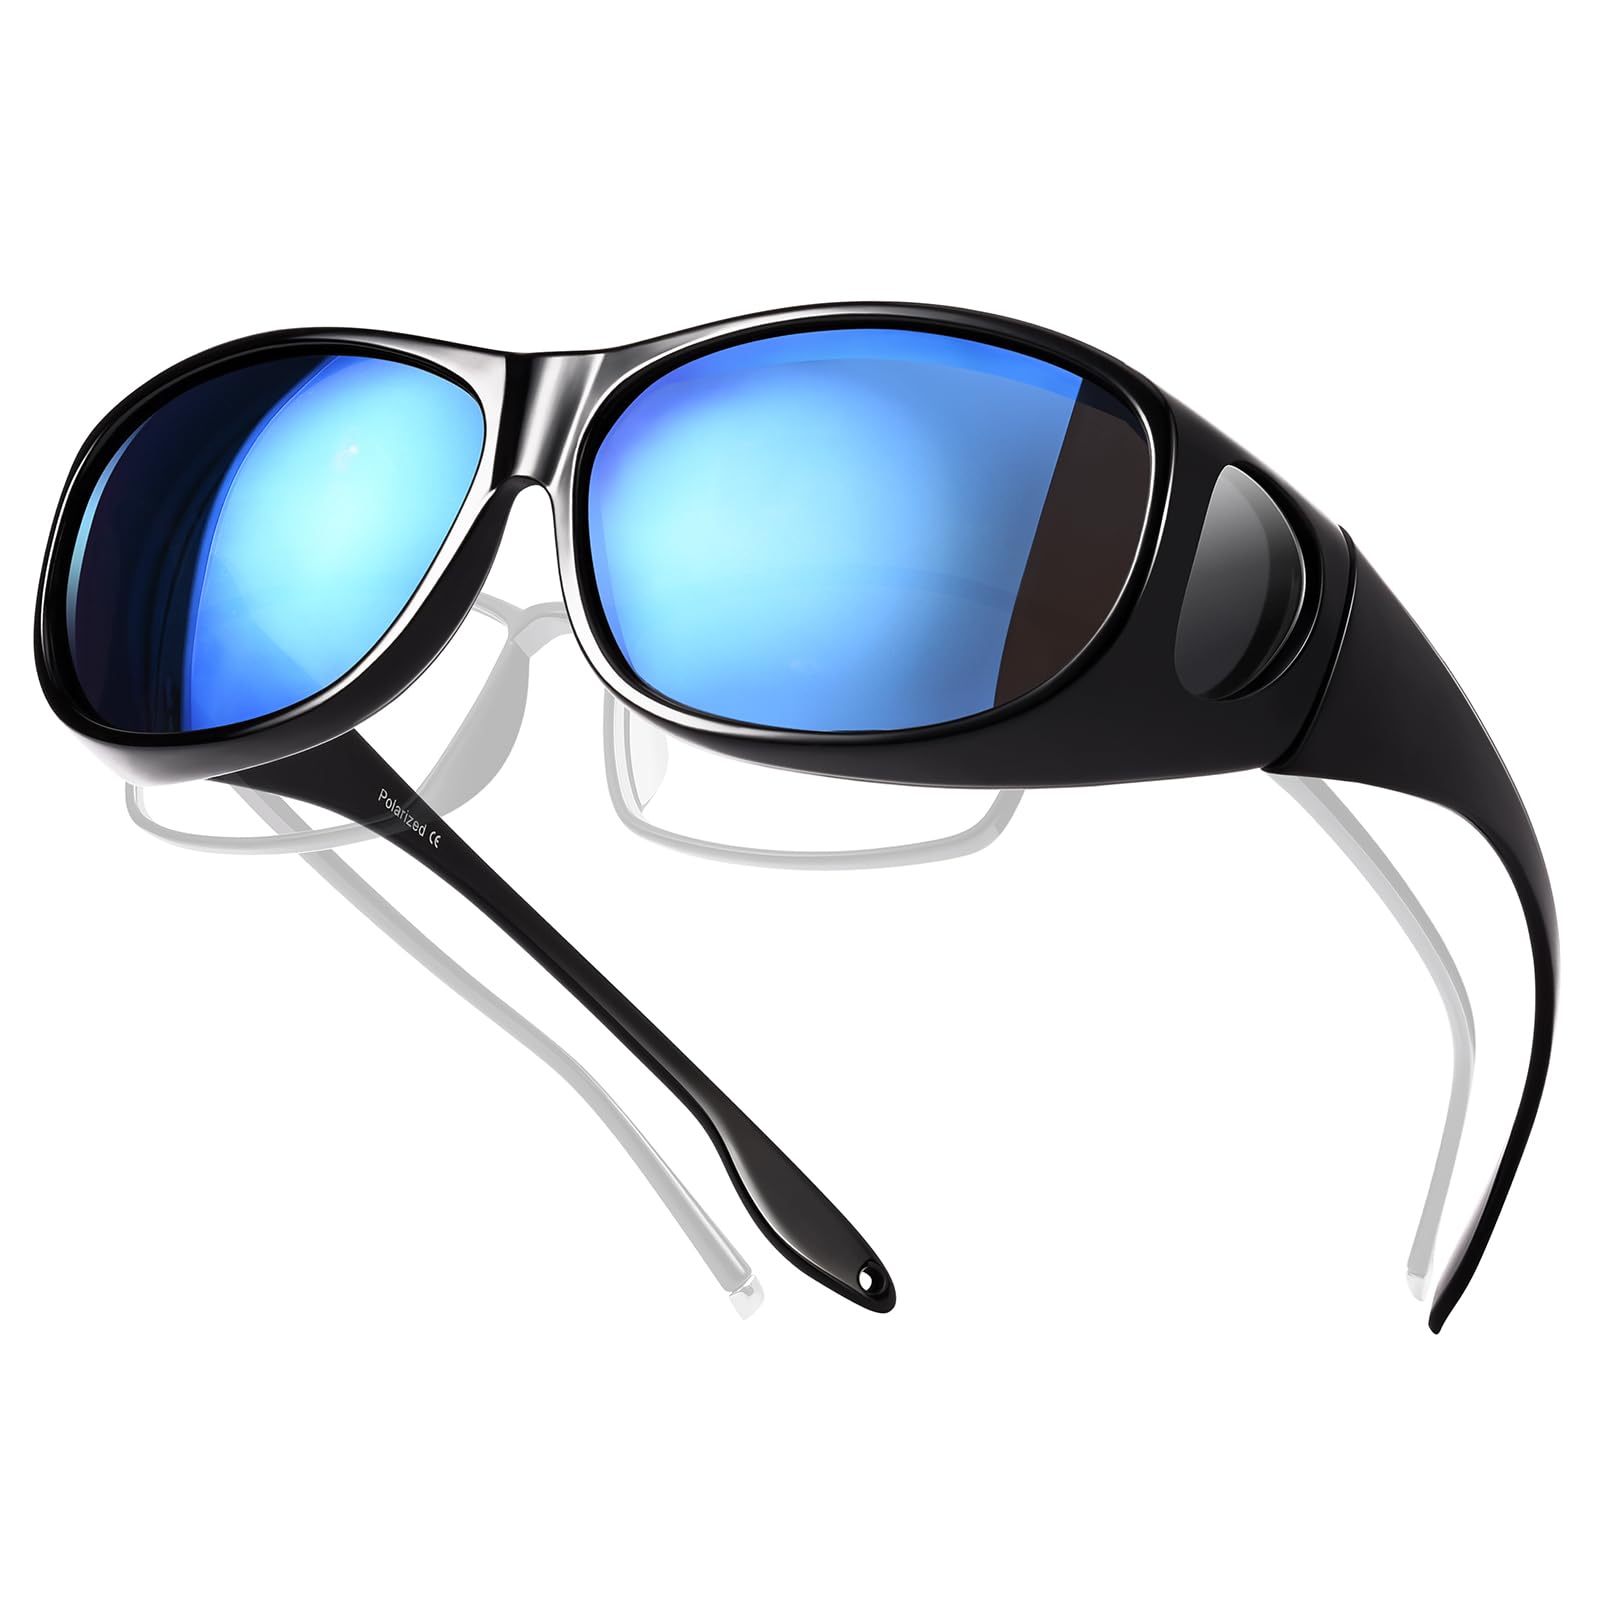 TINHAO オーバーサングラス メガネの上から メンズ サングラス 偏光レンズ UV400 紫外線カット ドライブ/ゴルフ/釣り/アウトドア (ブルー